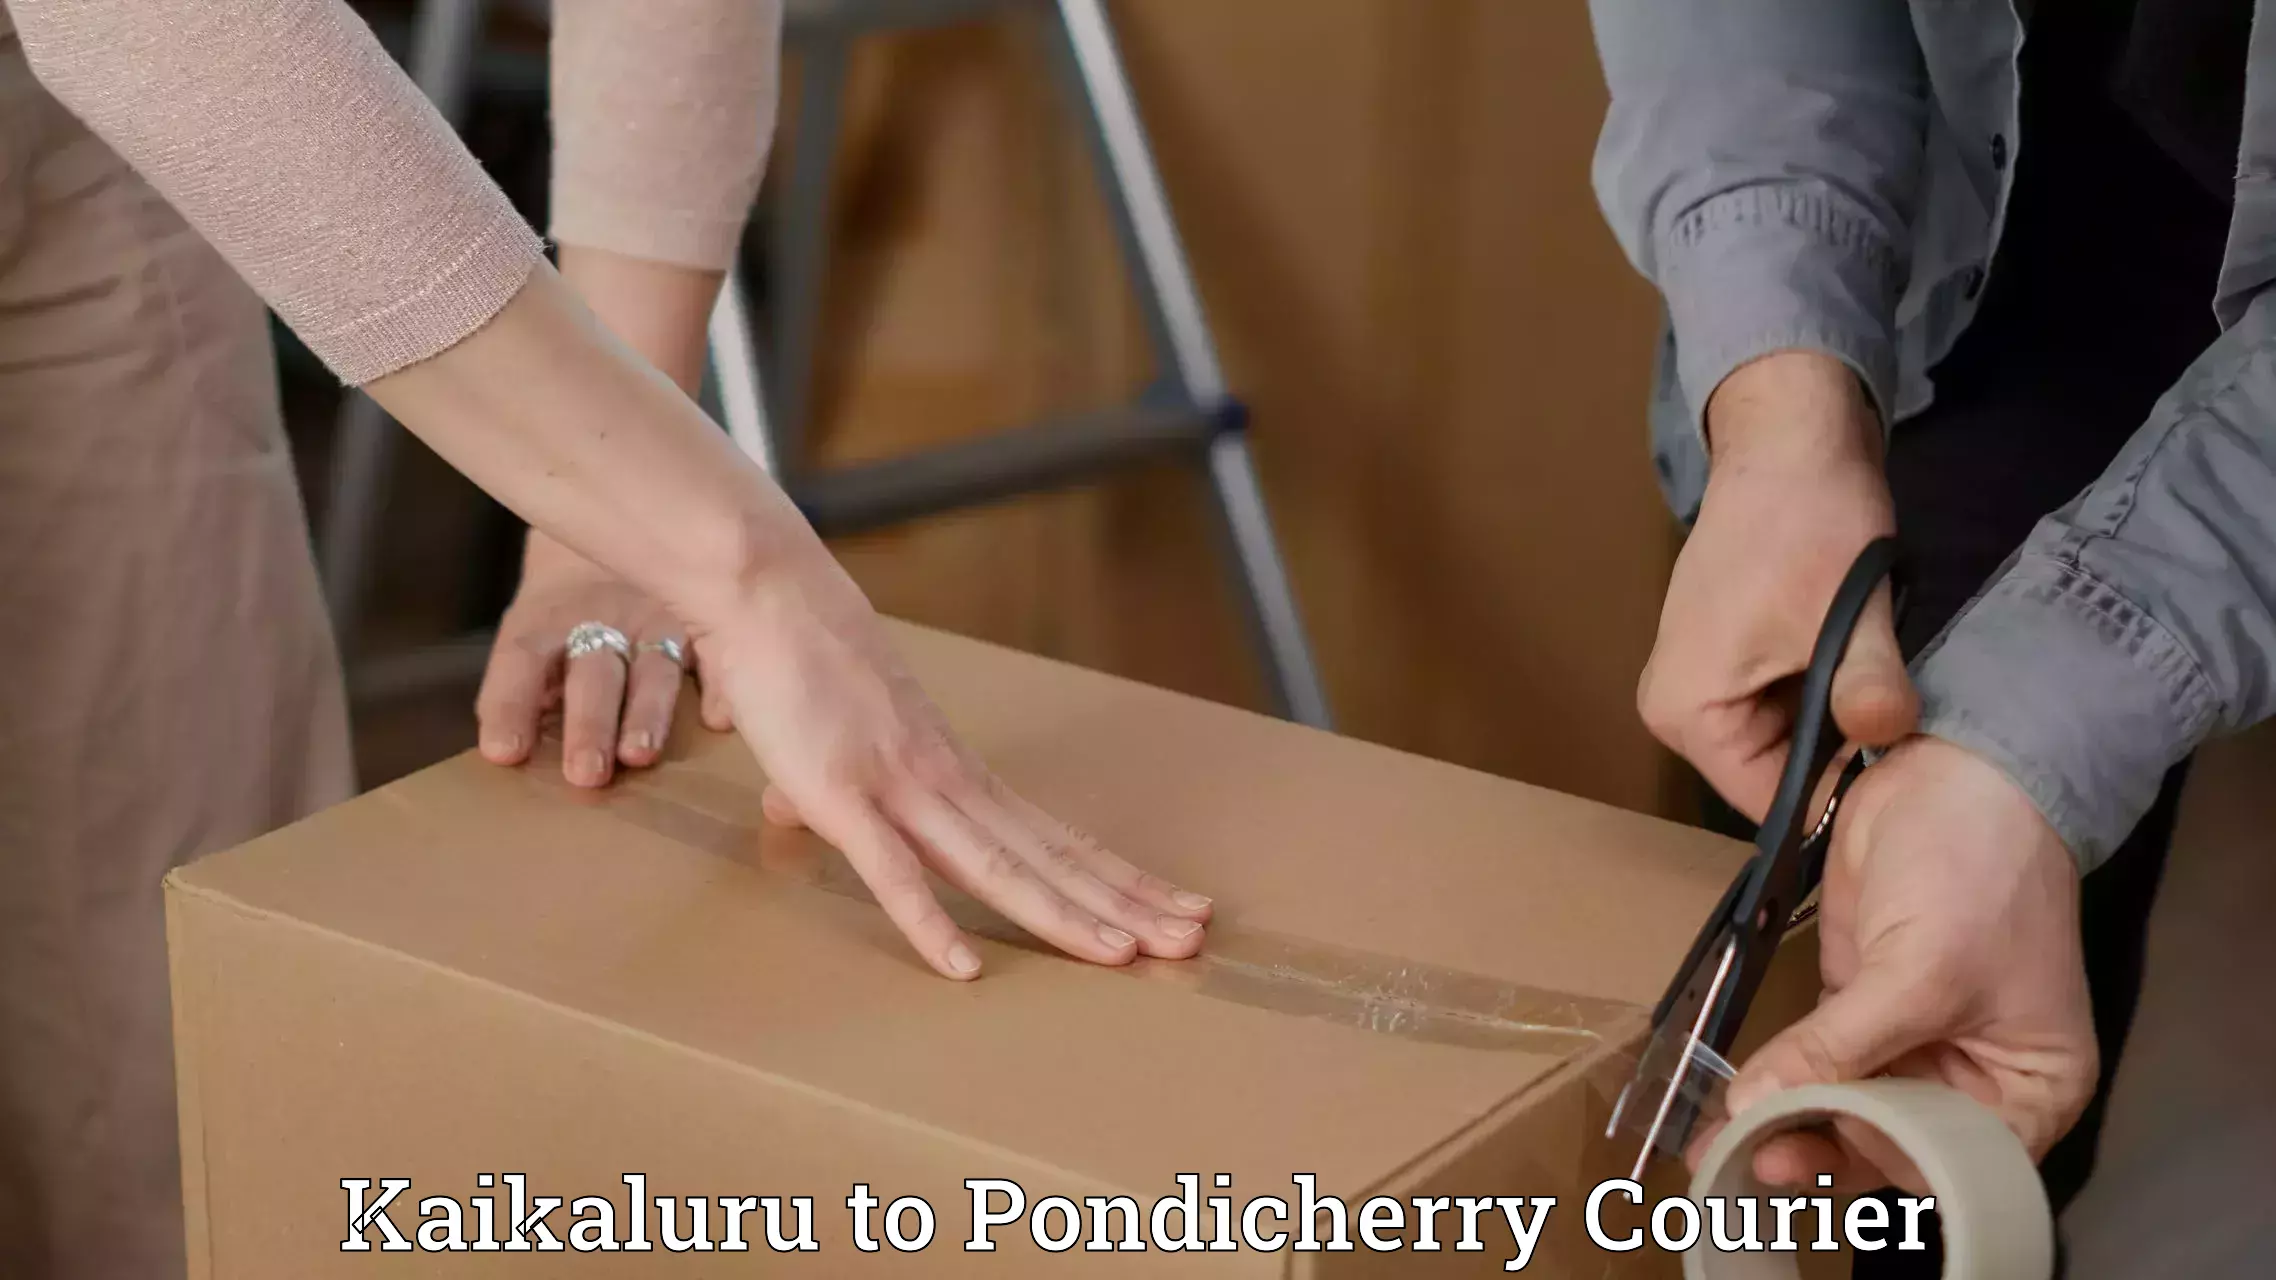 Advanced courier platforms Kaikaluru to Pondicherry University